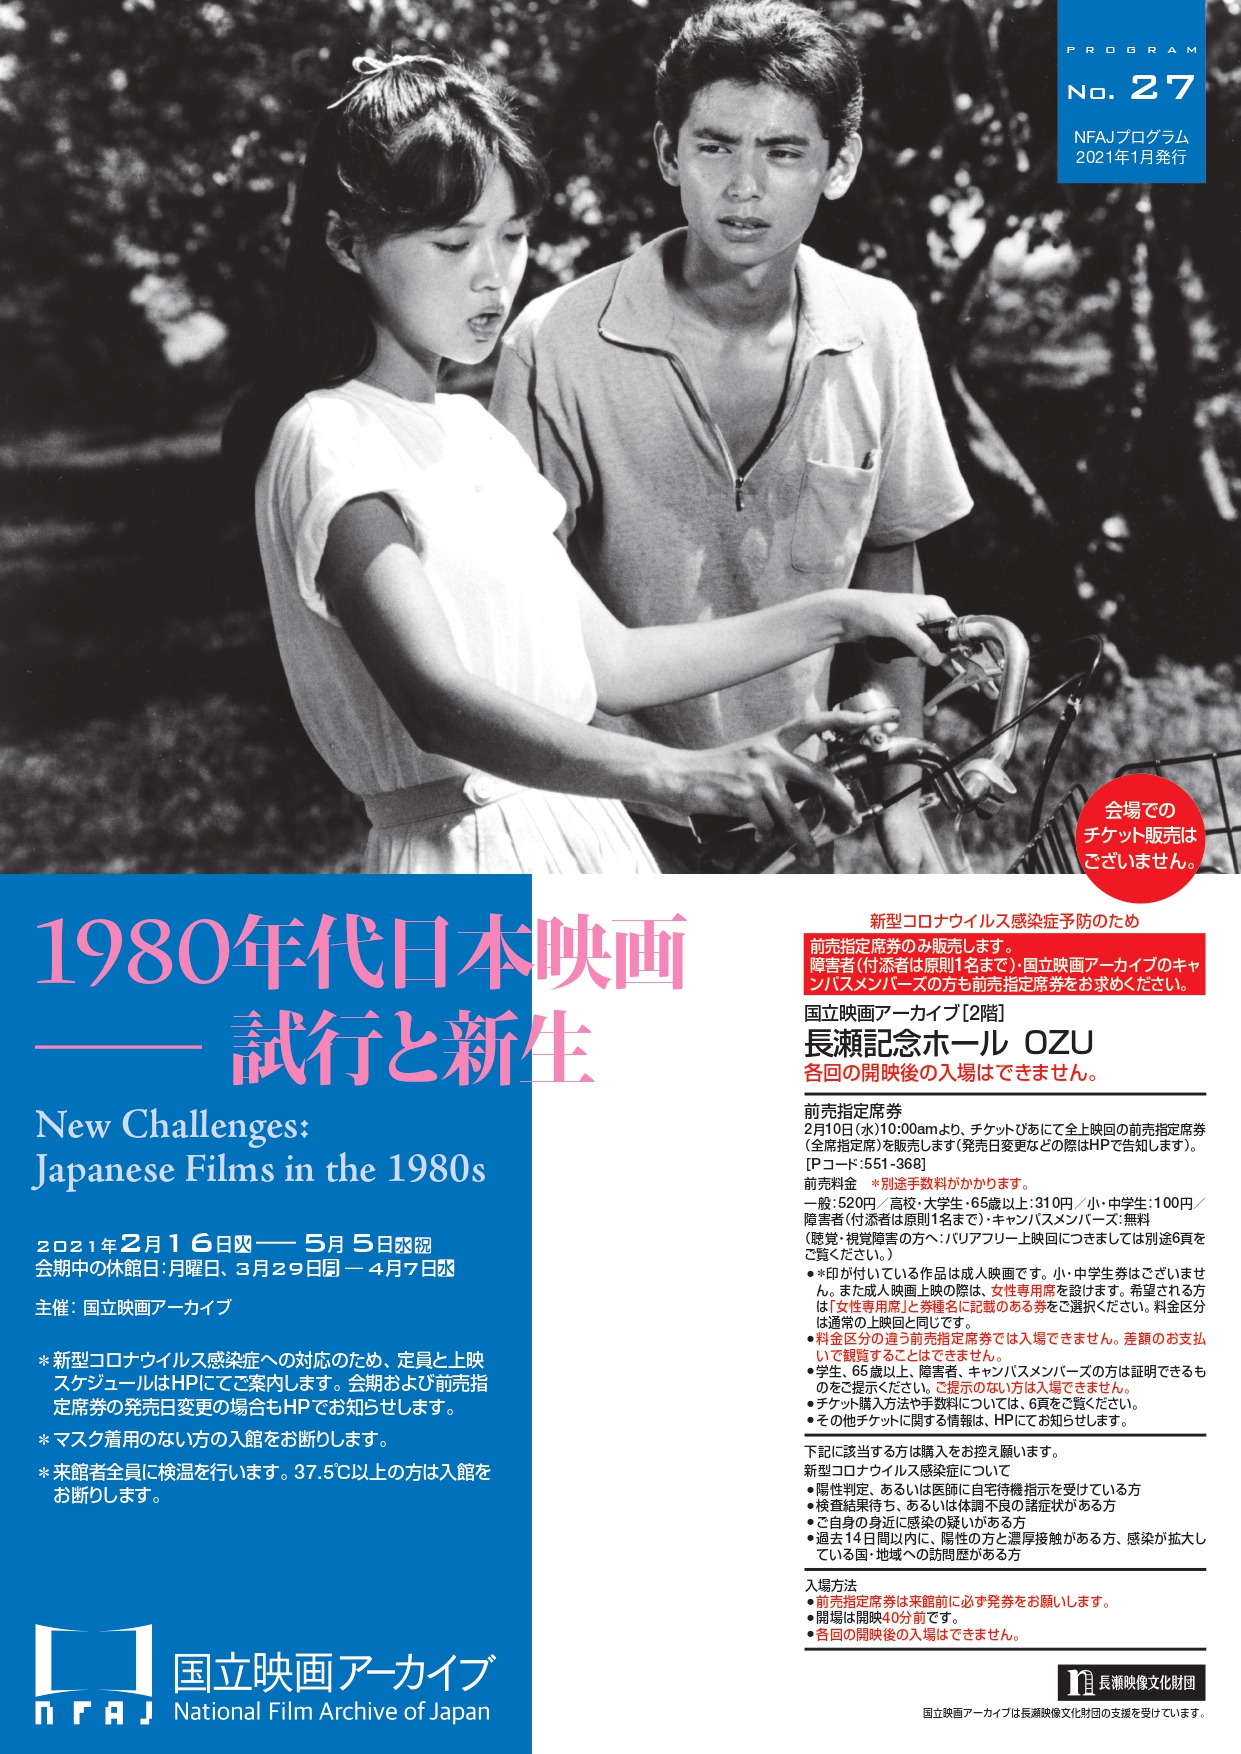 国立映画アーカイブ 上映企画 1980年代日本映画 試行と新生 開催のお知らせ 文化庁のプレスリリース